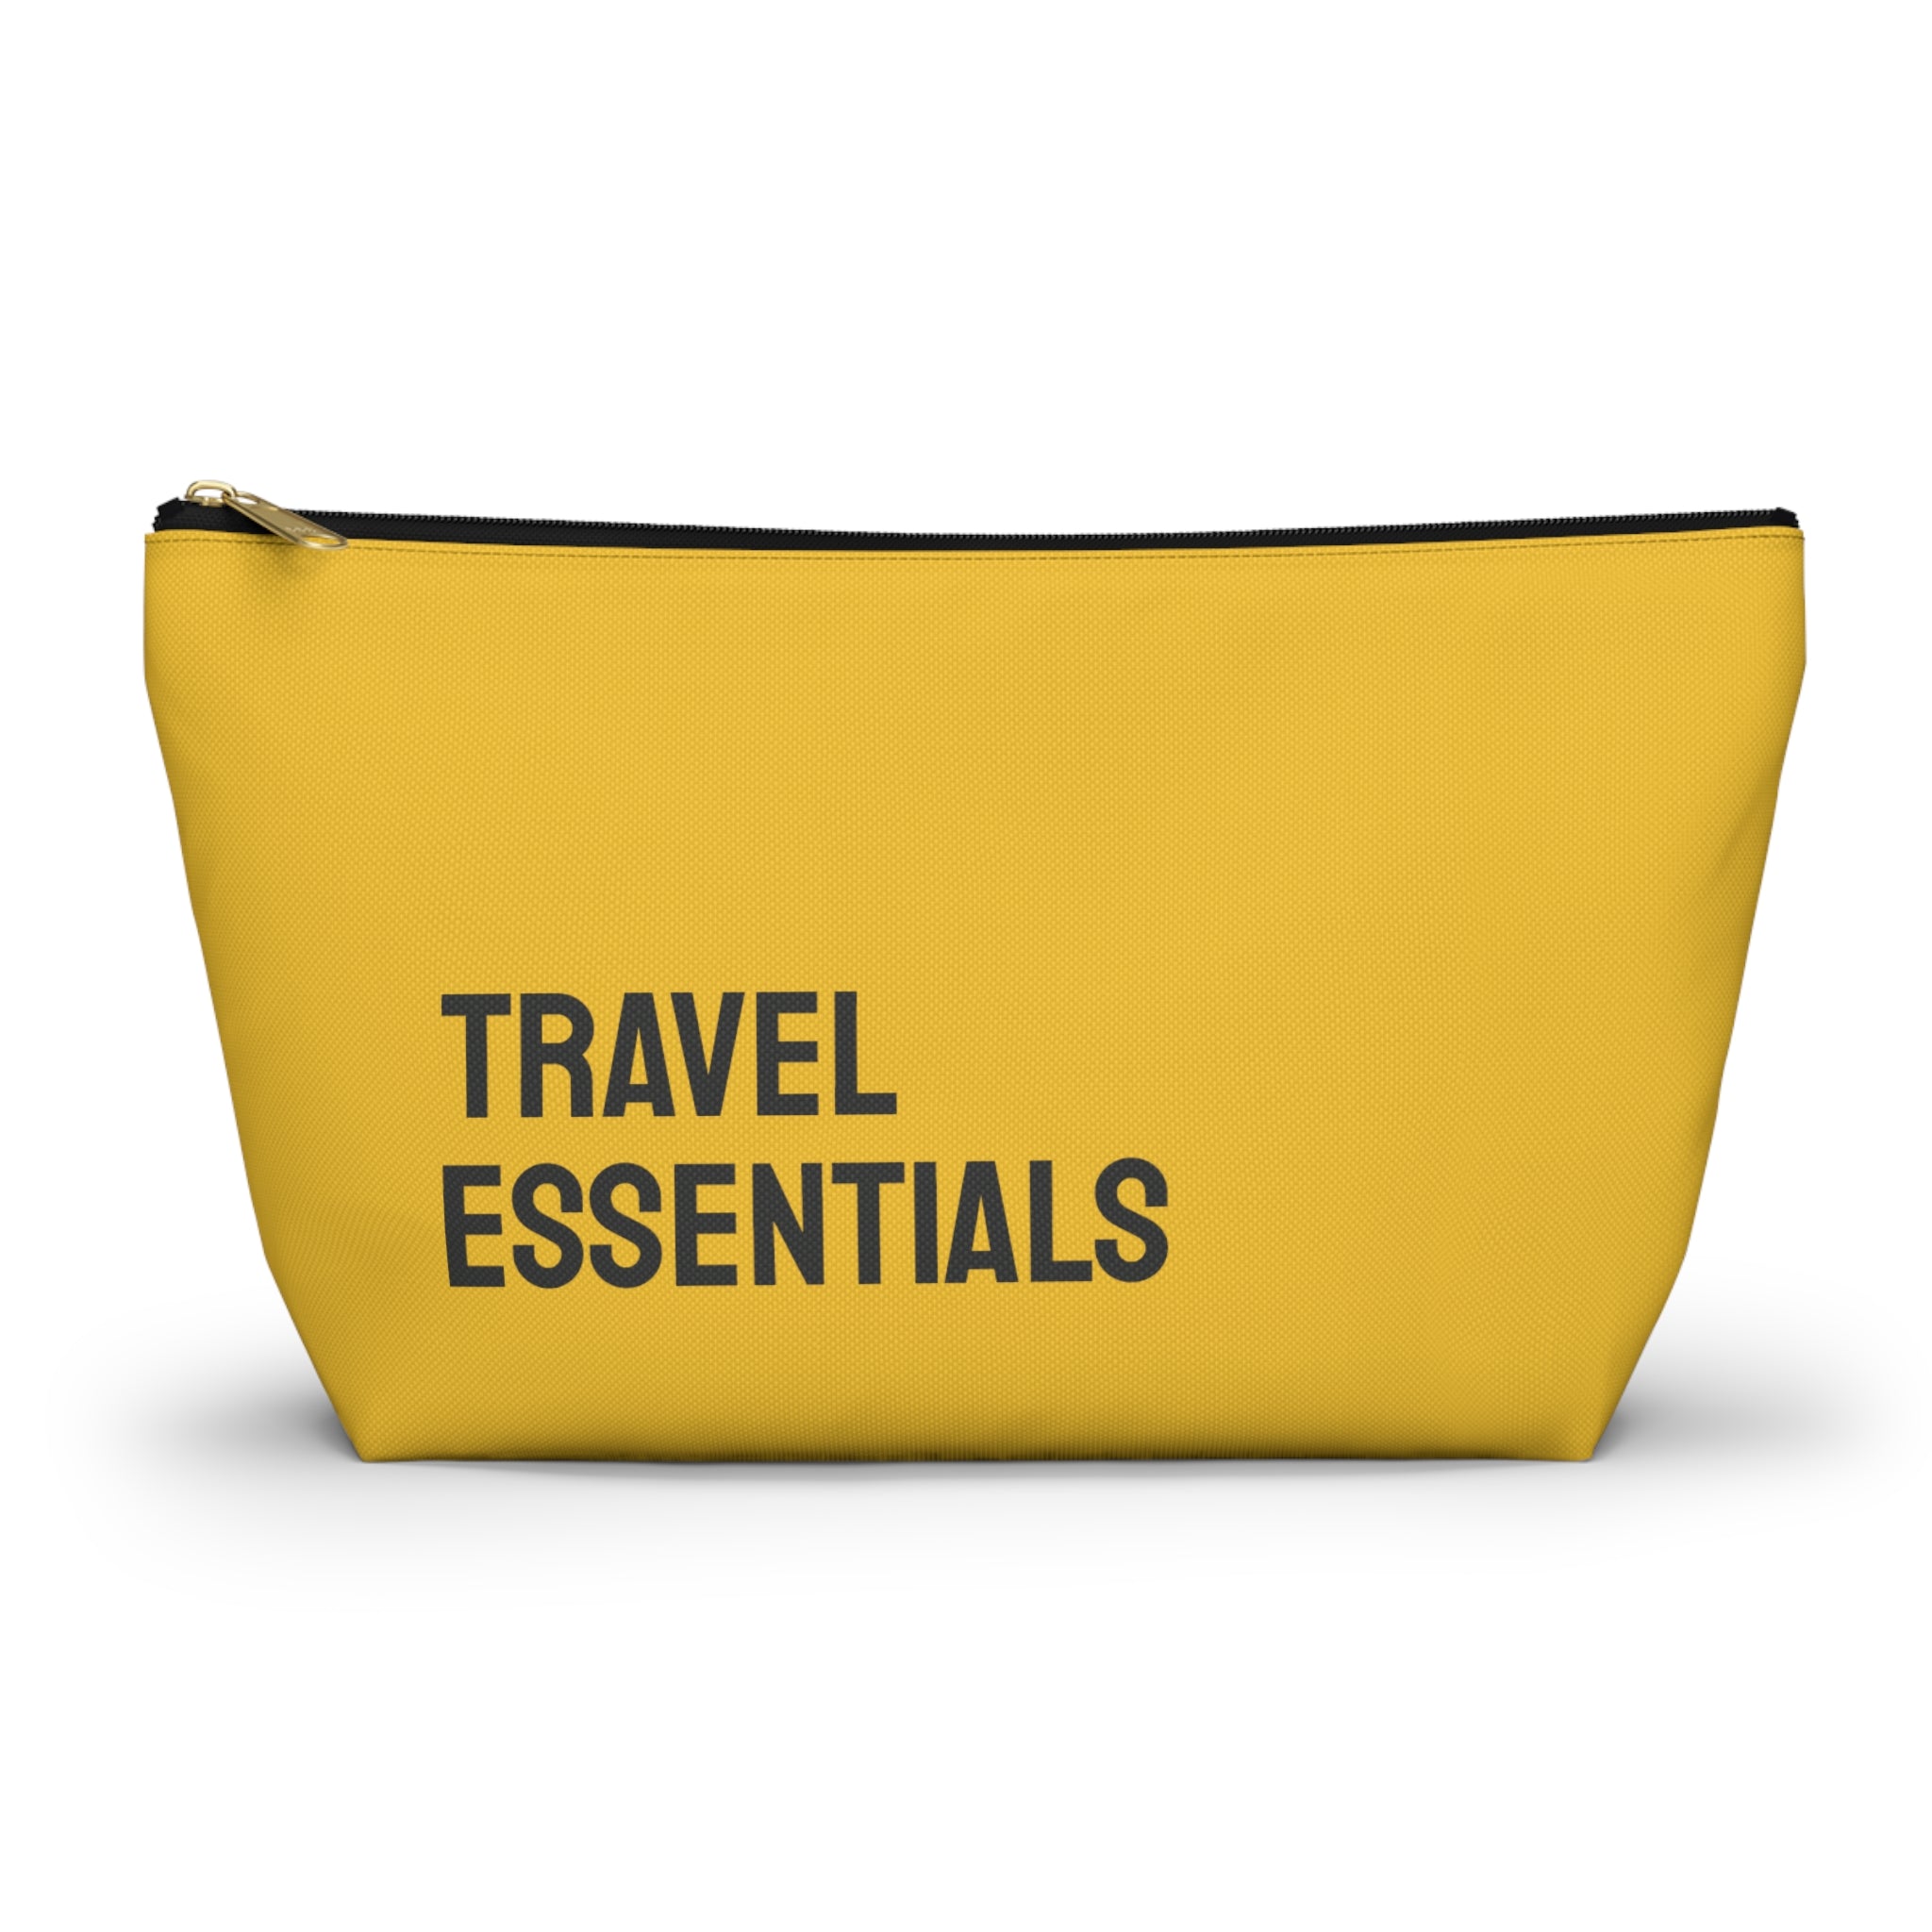 Travel essentials Pouch (Black)